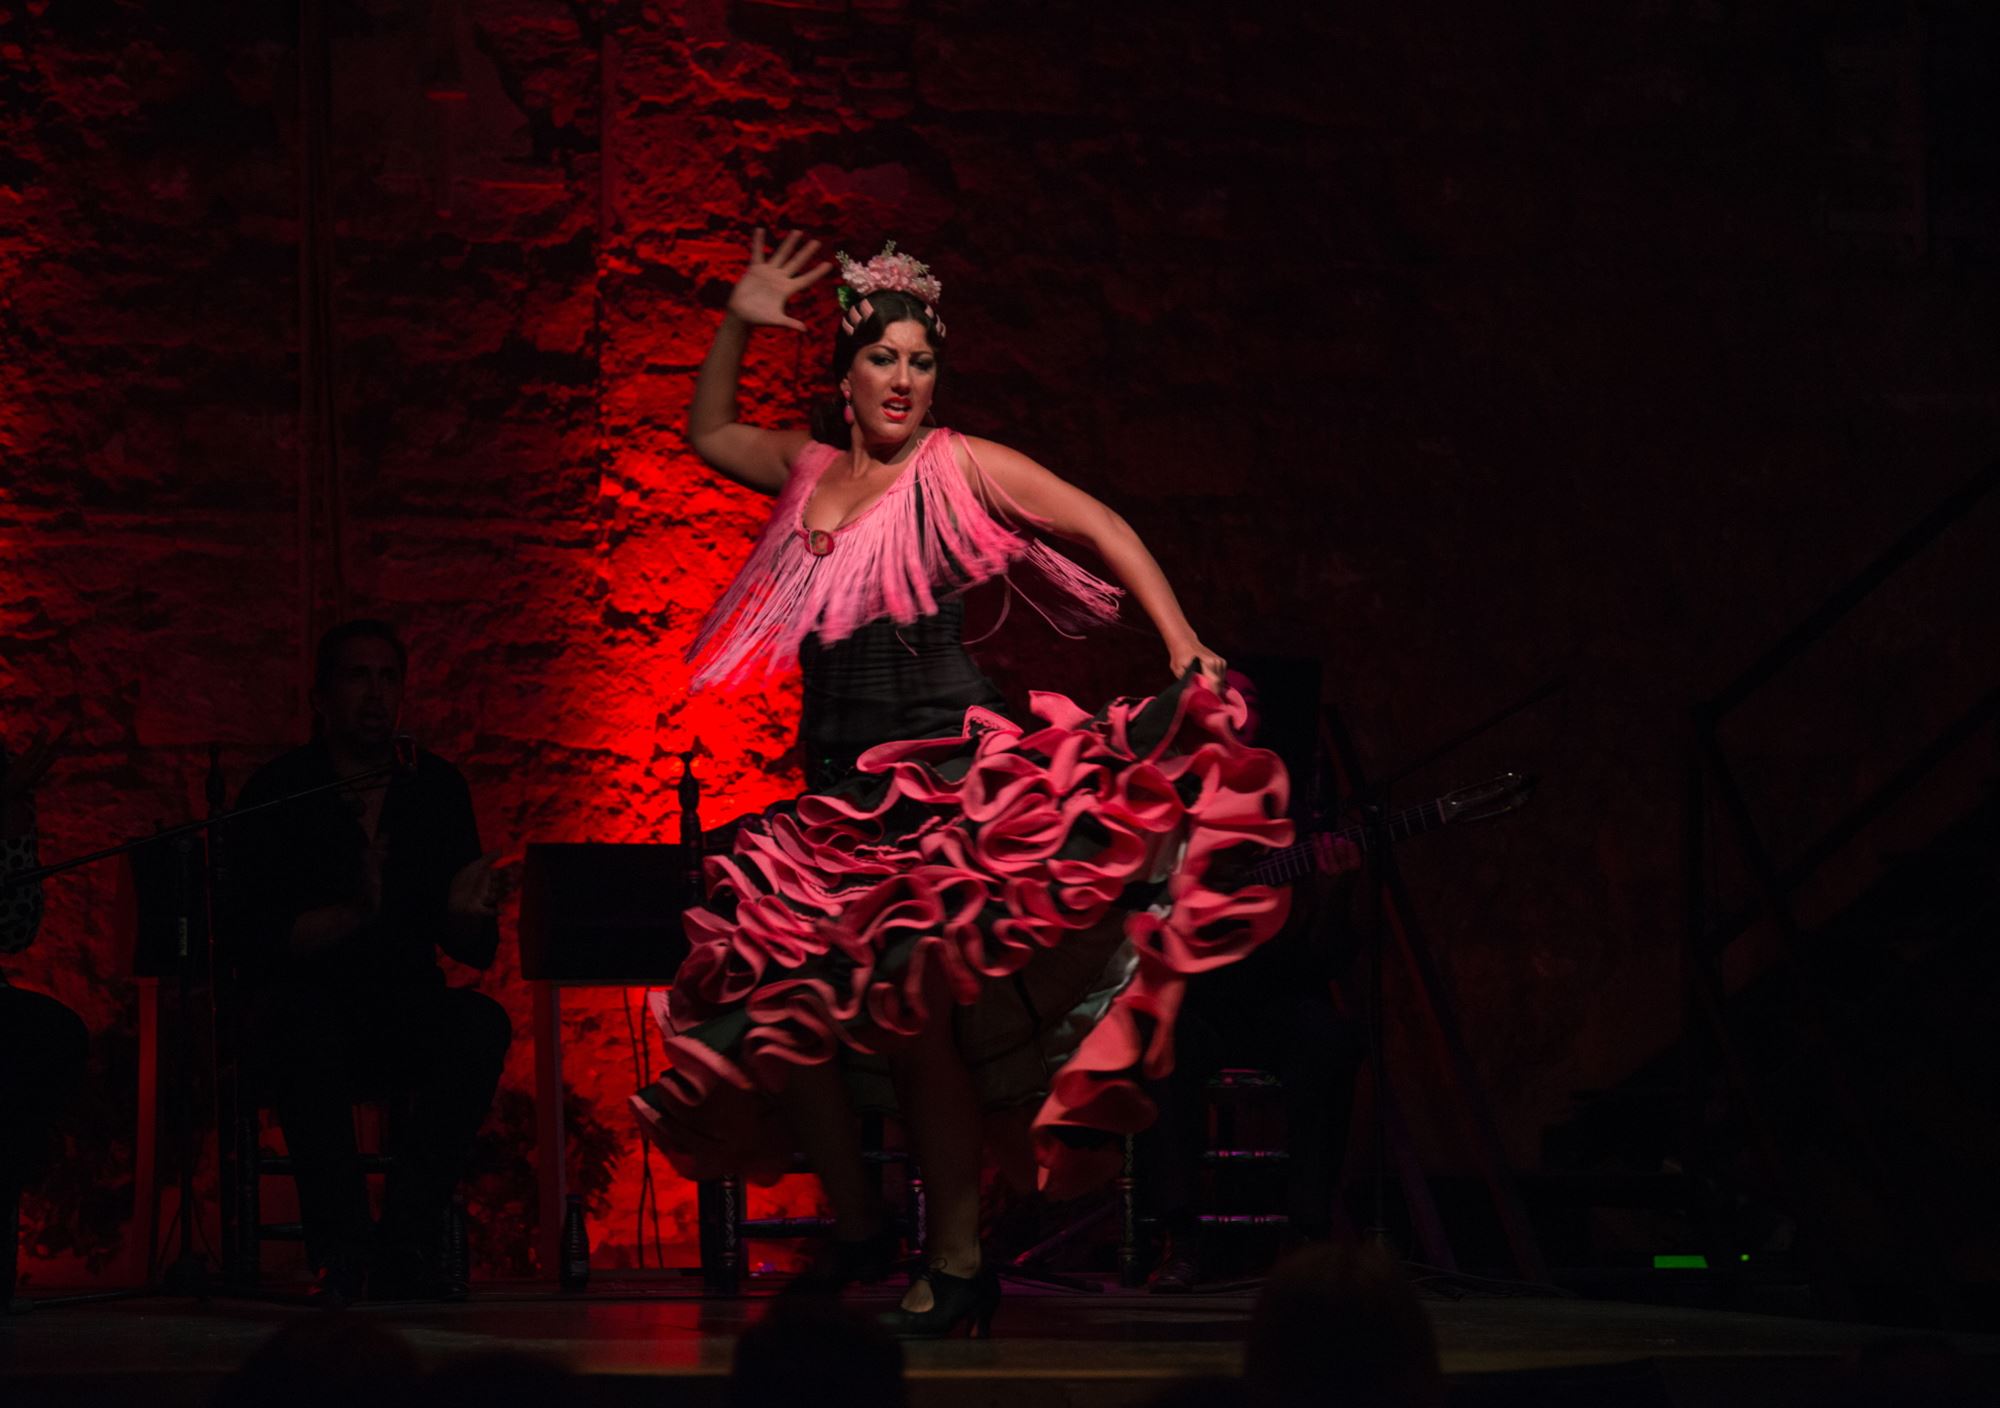 Espectáculo Flamenco en el Tablao Puro Arte de Jerez de la Frontera de Cádiz